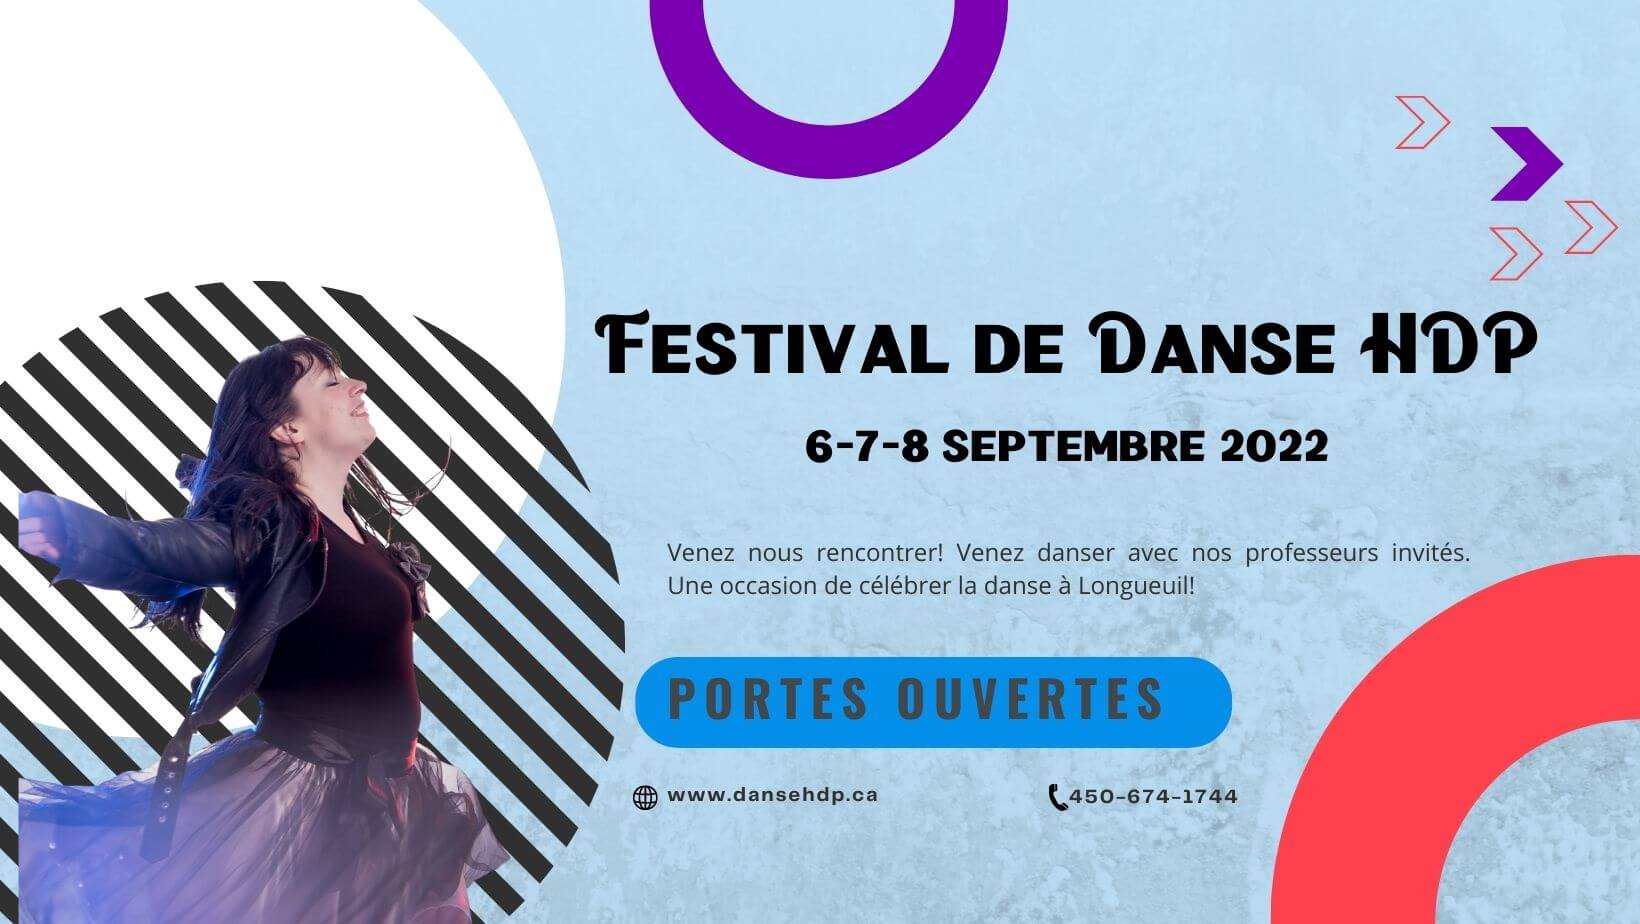 Festival de danse HDP - 6-7-8 septembre 2022